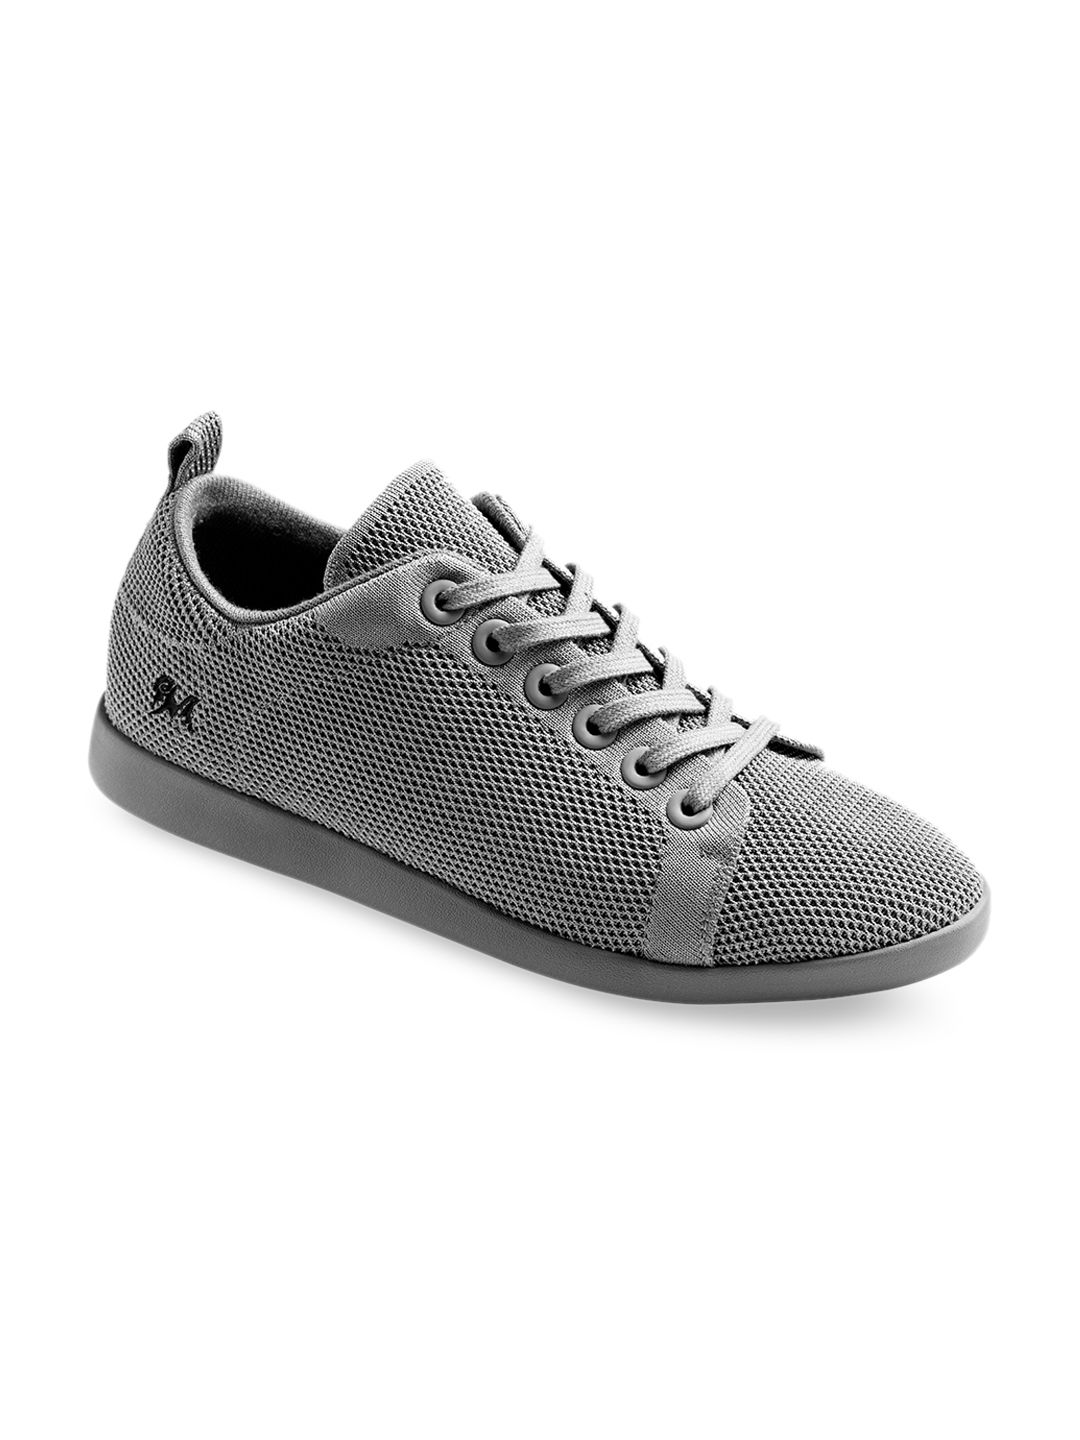 NEEMANS Unisex Grey Woven Design Sneakers Price in India